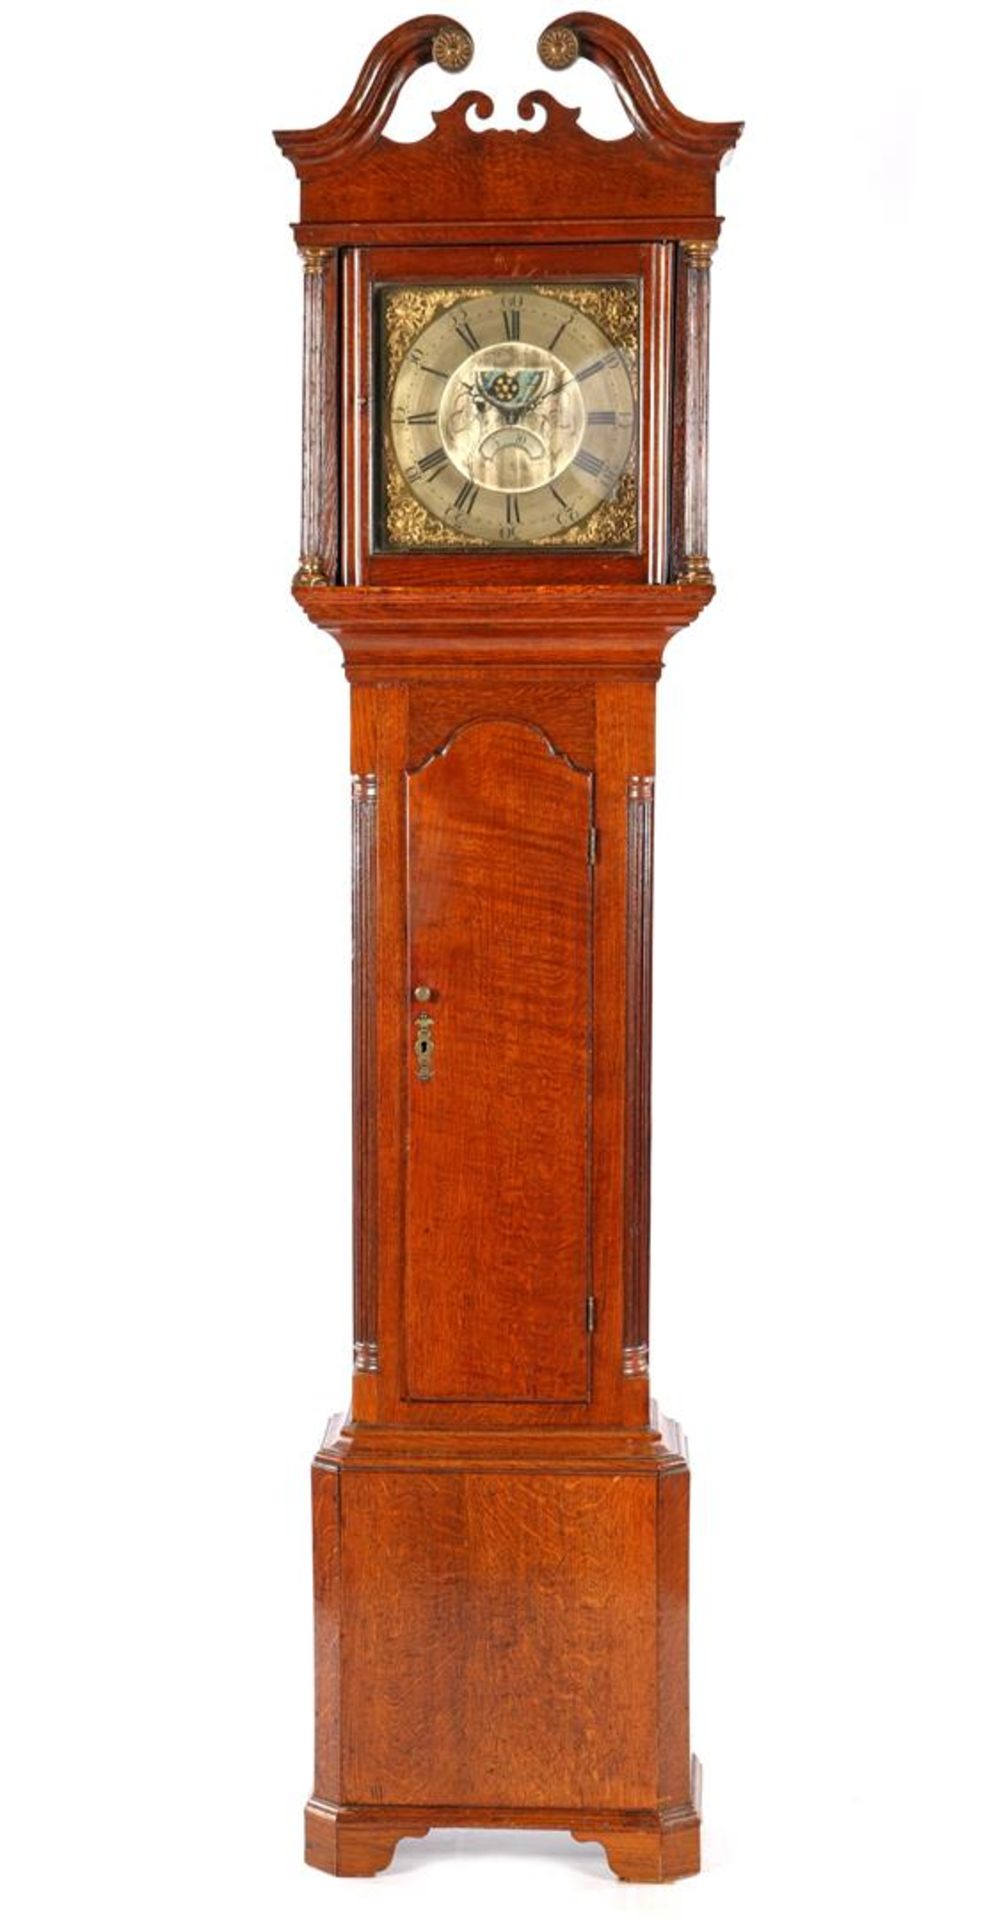 English longcase watch in oak case